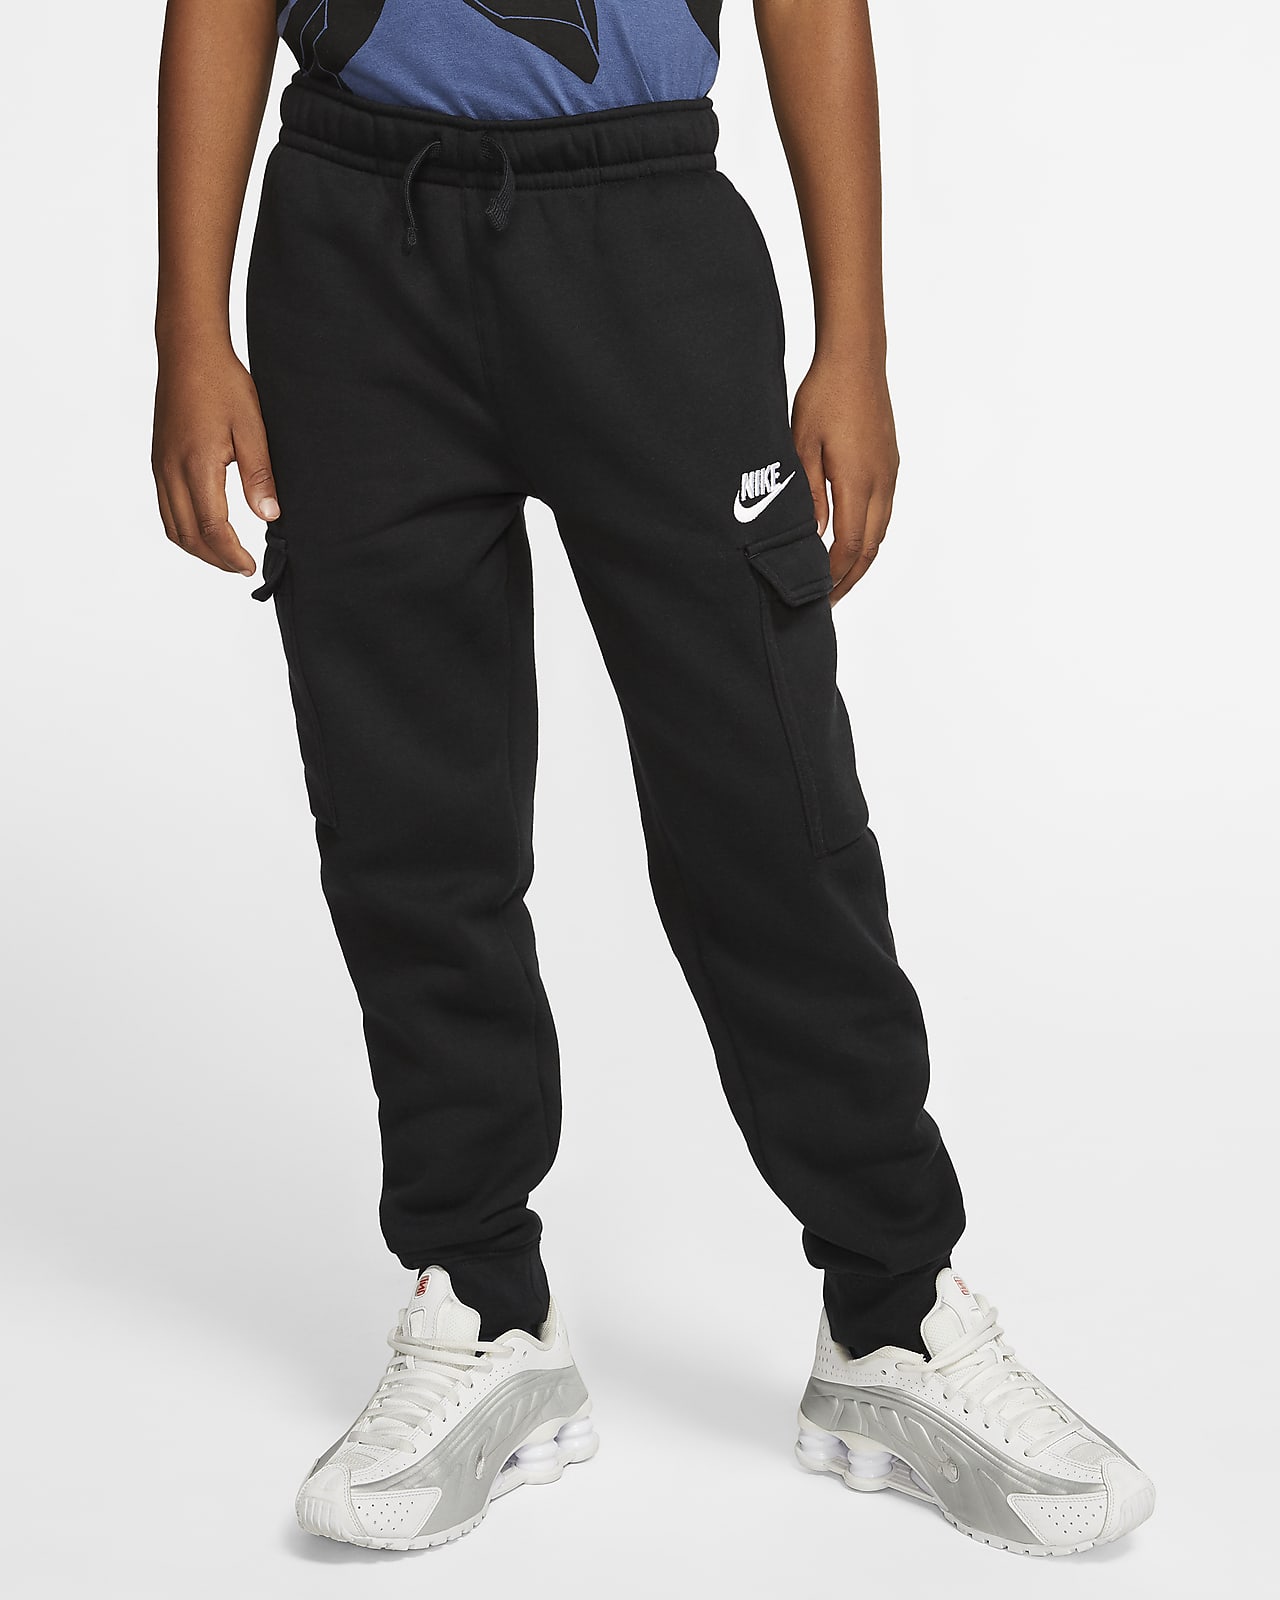 Nike sb cargo pants camo | SidelineSwap